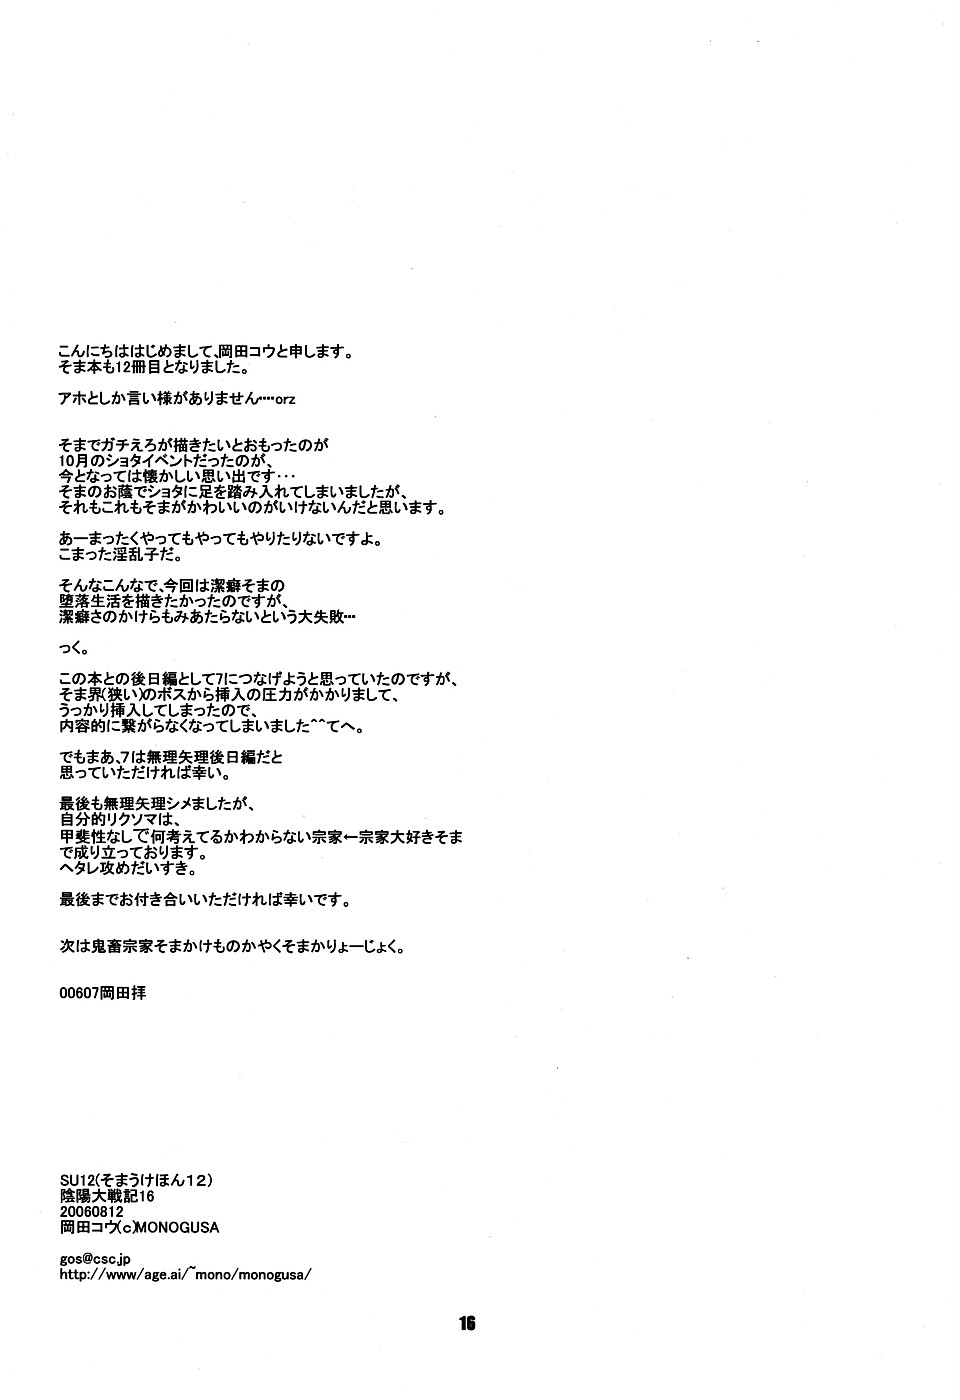 [Monogusa] Soma Uke Hon 12 (SU 12) (BL) (Shota) 